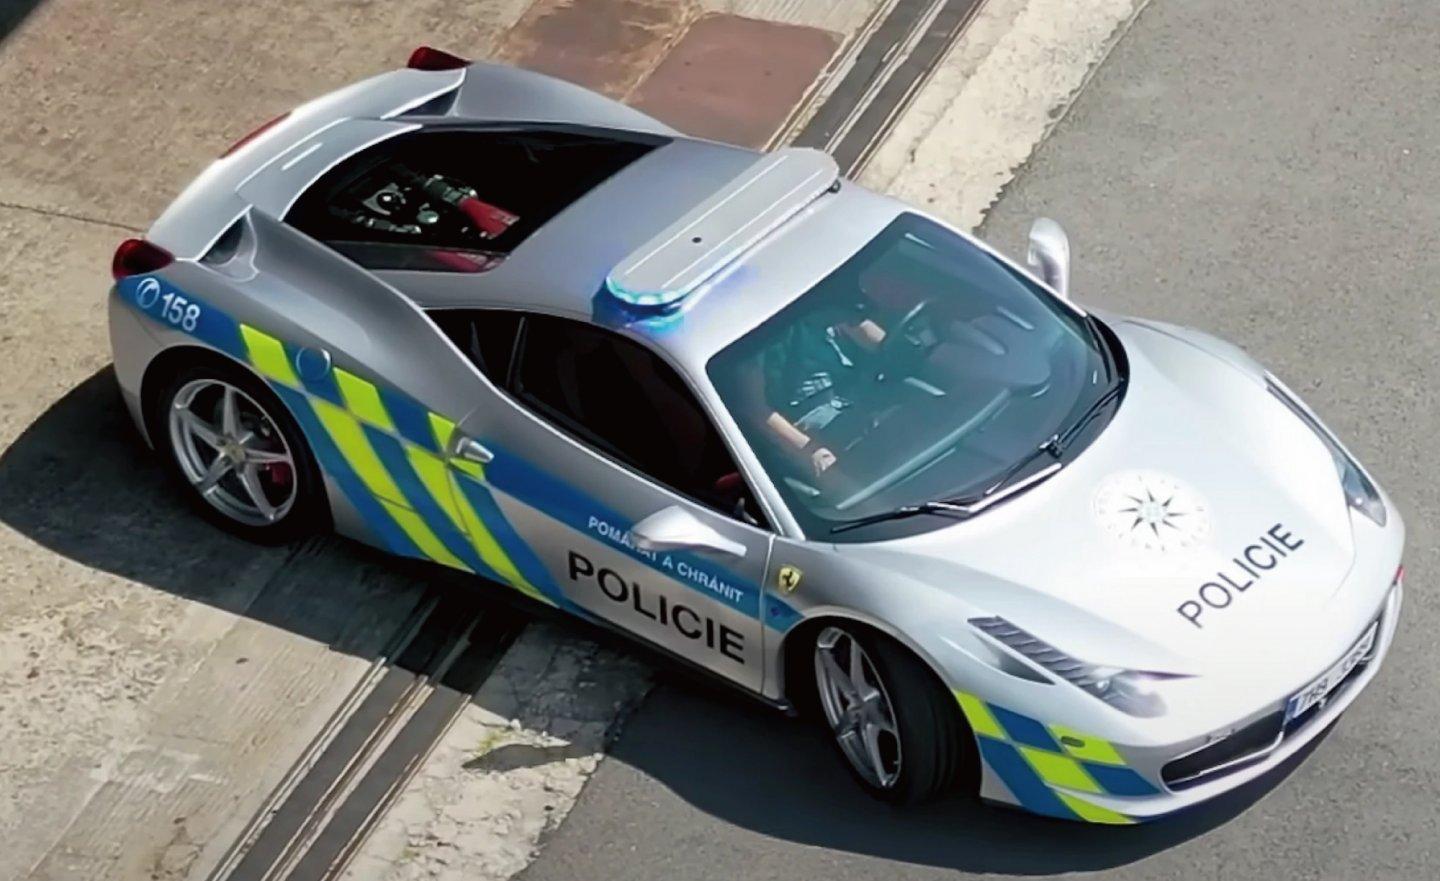 【影片】捷克警方將查獲沒收的法拉利 458 Italia 變成警車